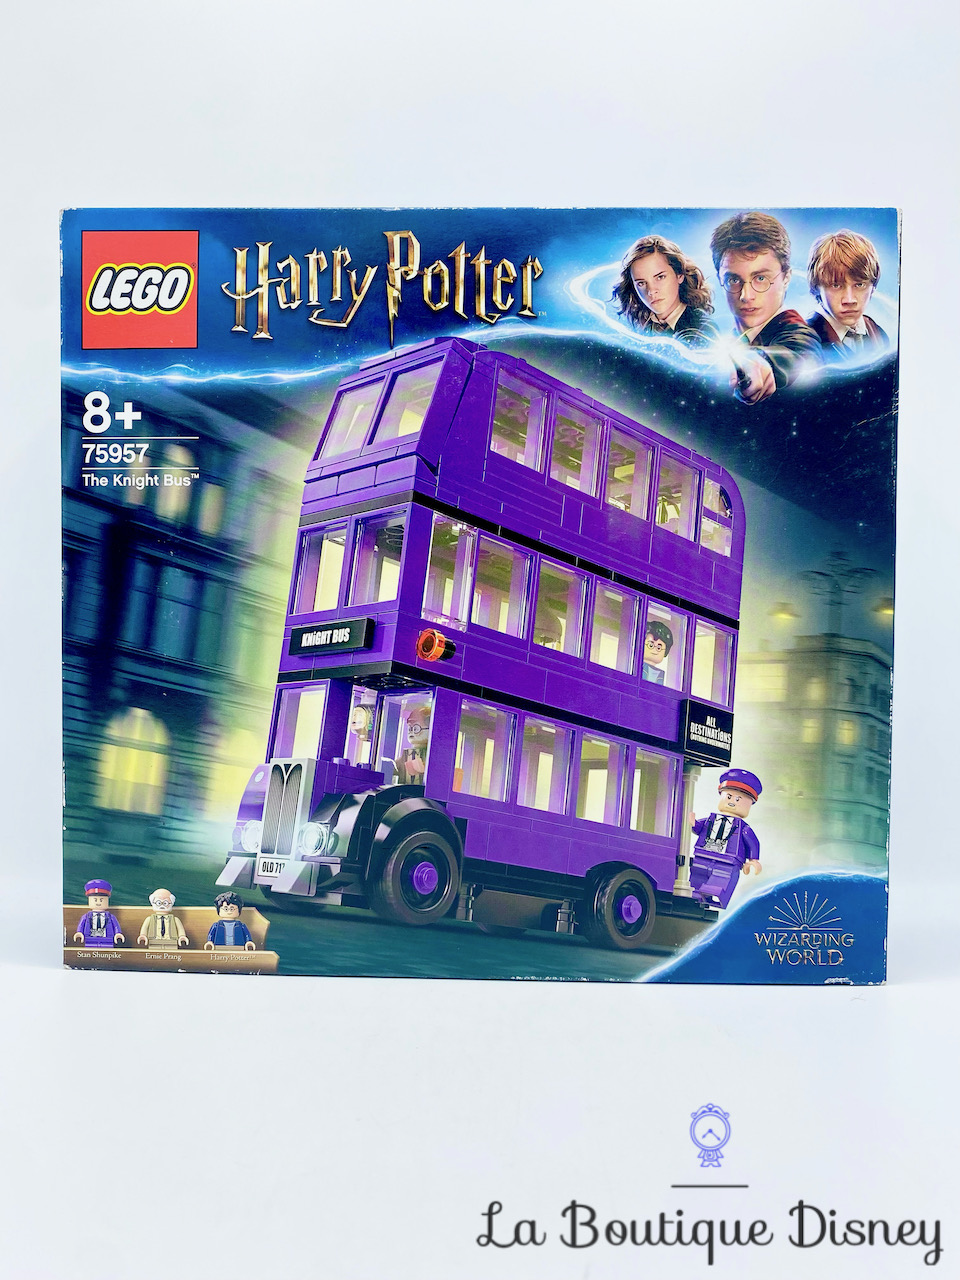 jouet-lego-75957-le-magicobus-harry-potter-bus-violet-3